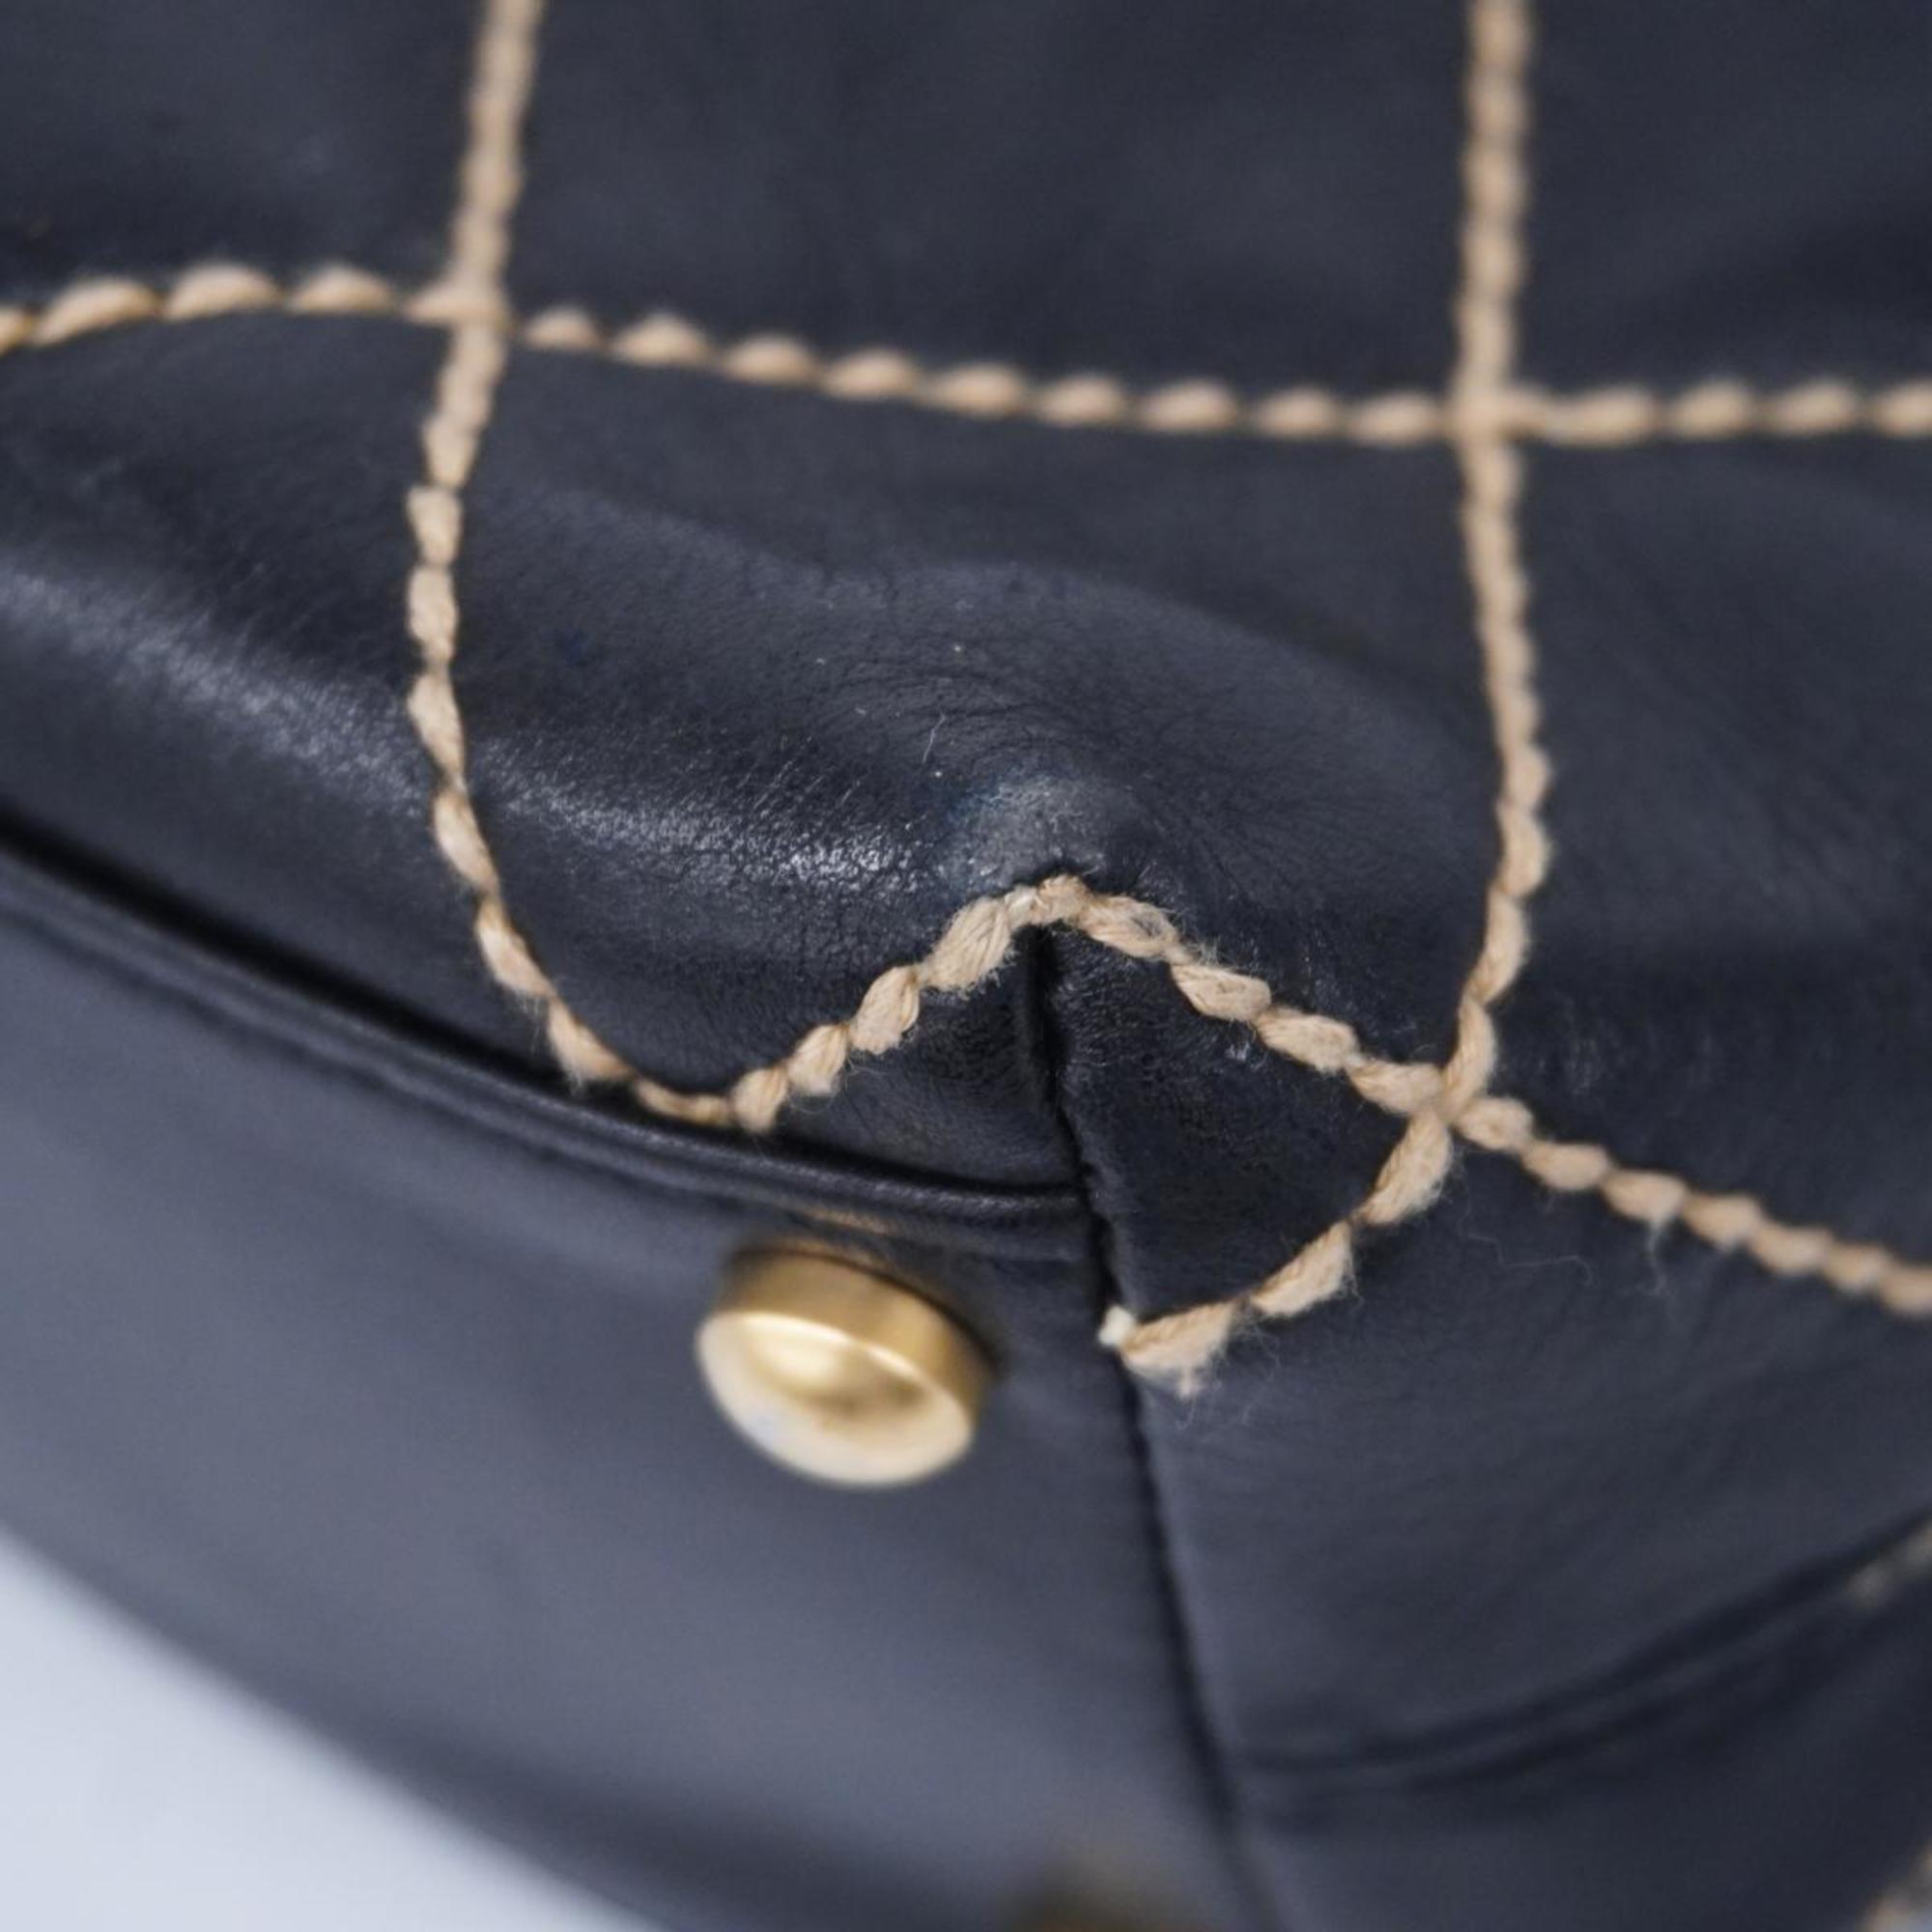 Chanel Shoulder Bag Wild Stitch Lambskin Black Women's